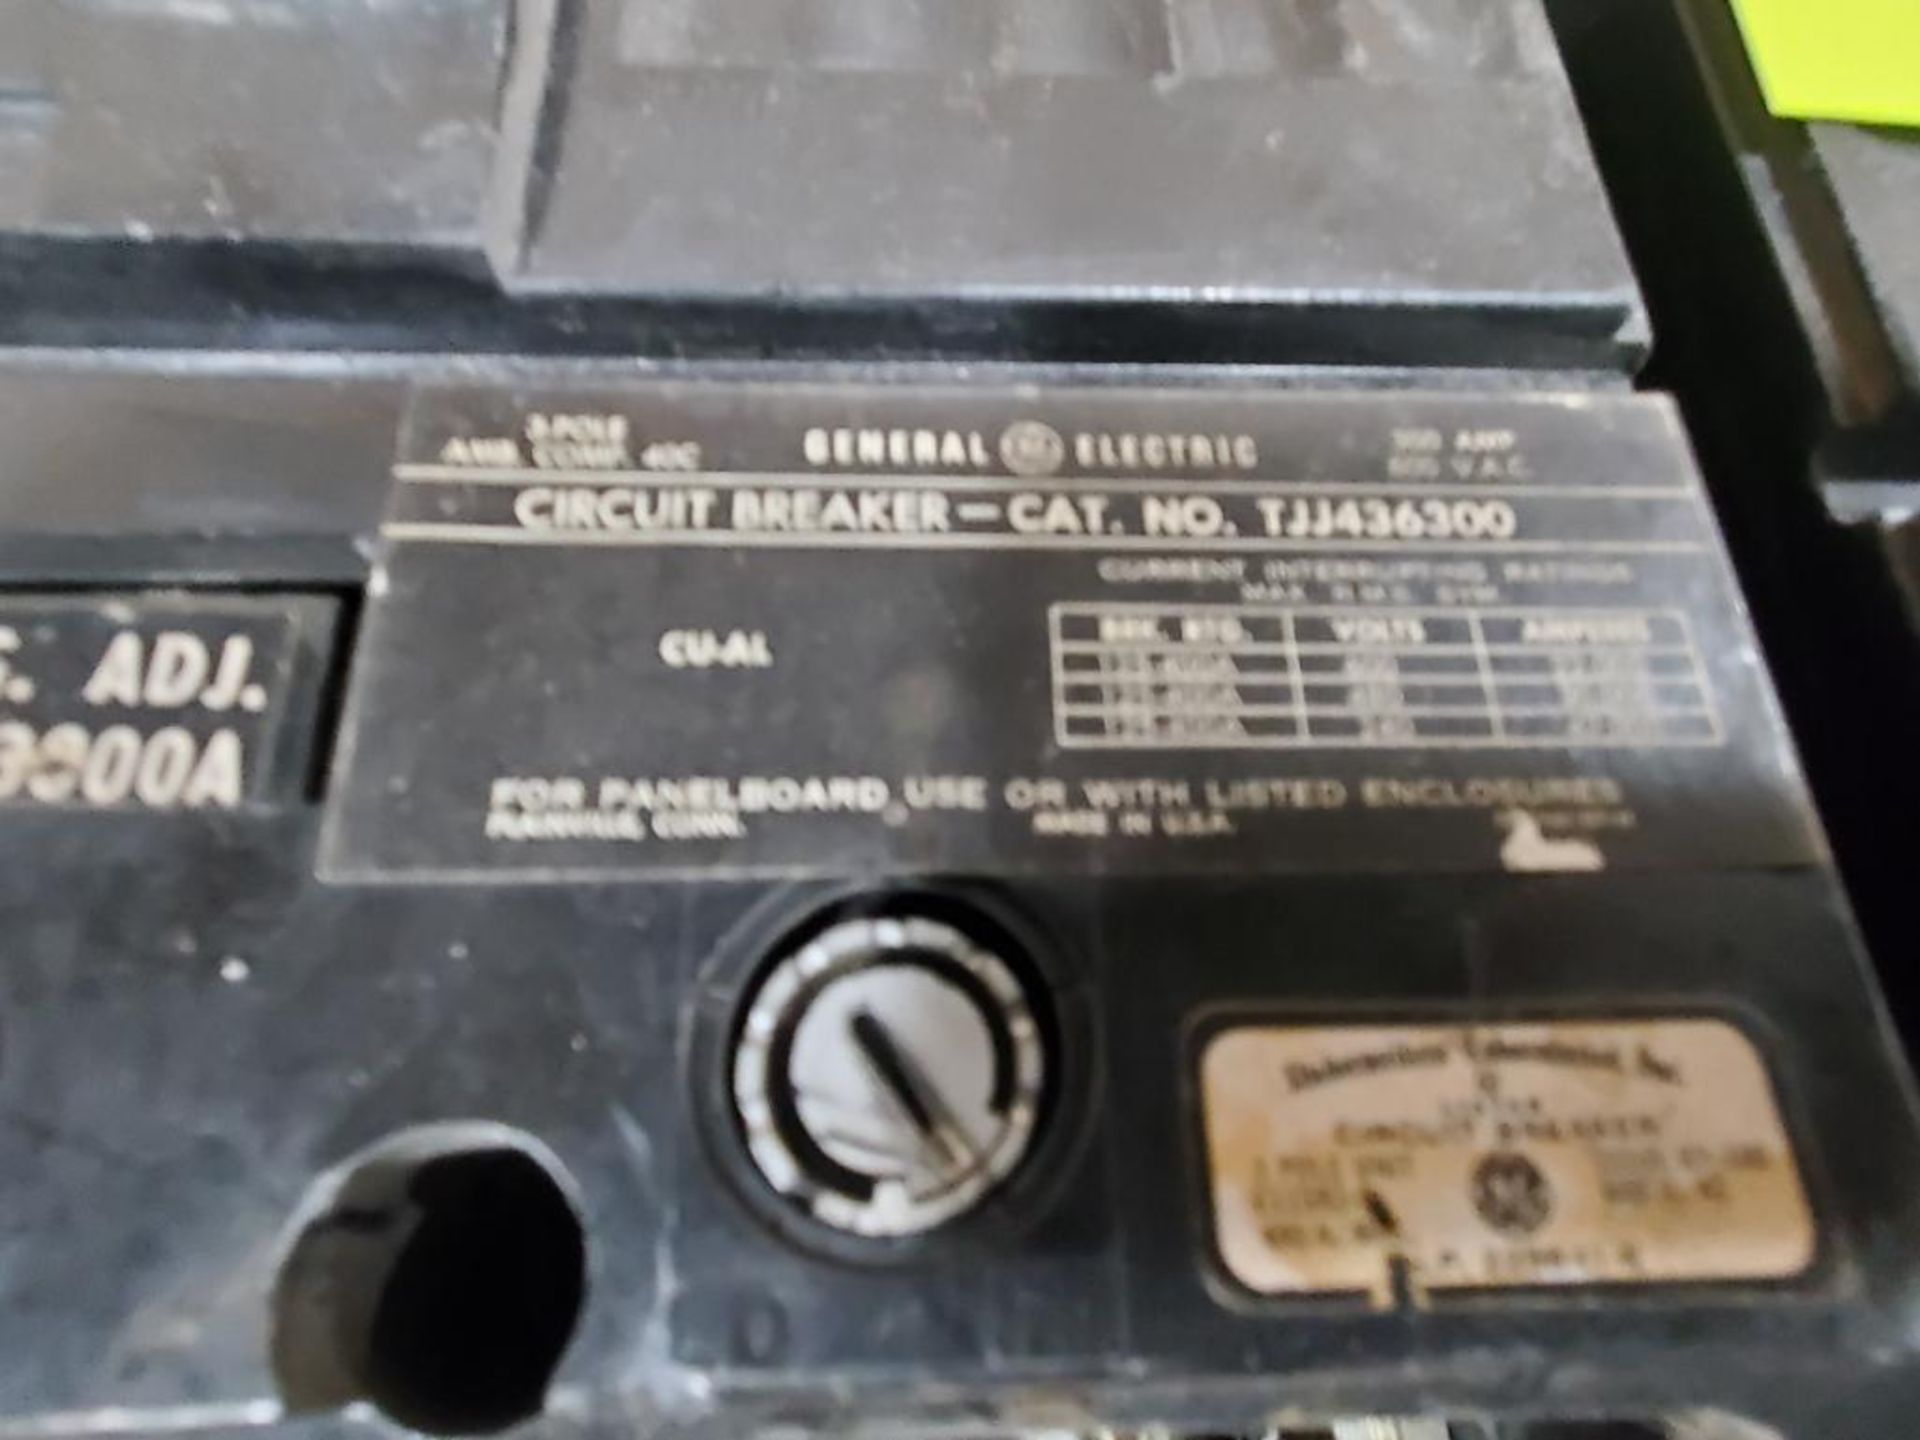 Qty 2 - 300 amp GE molded case breaker. Catalog TJJ436300. - Image 3 of 6